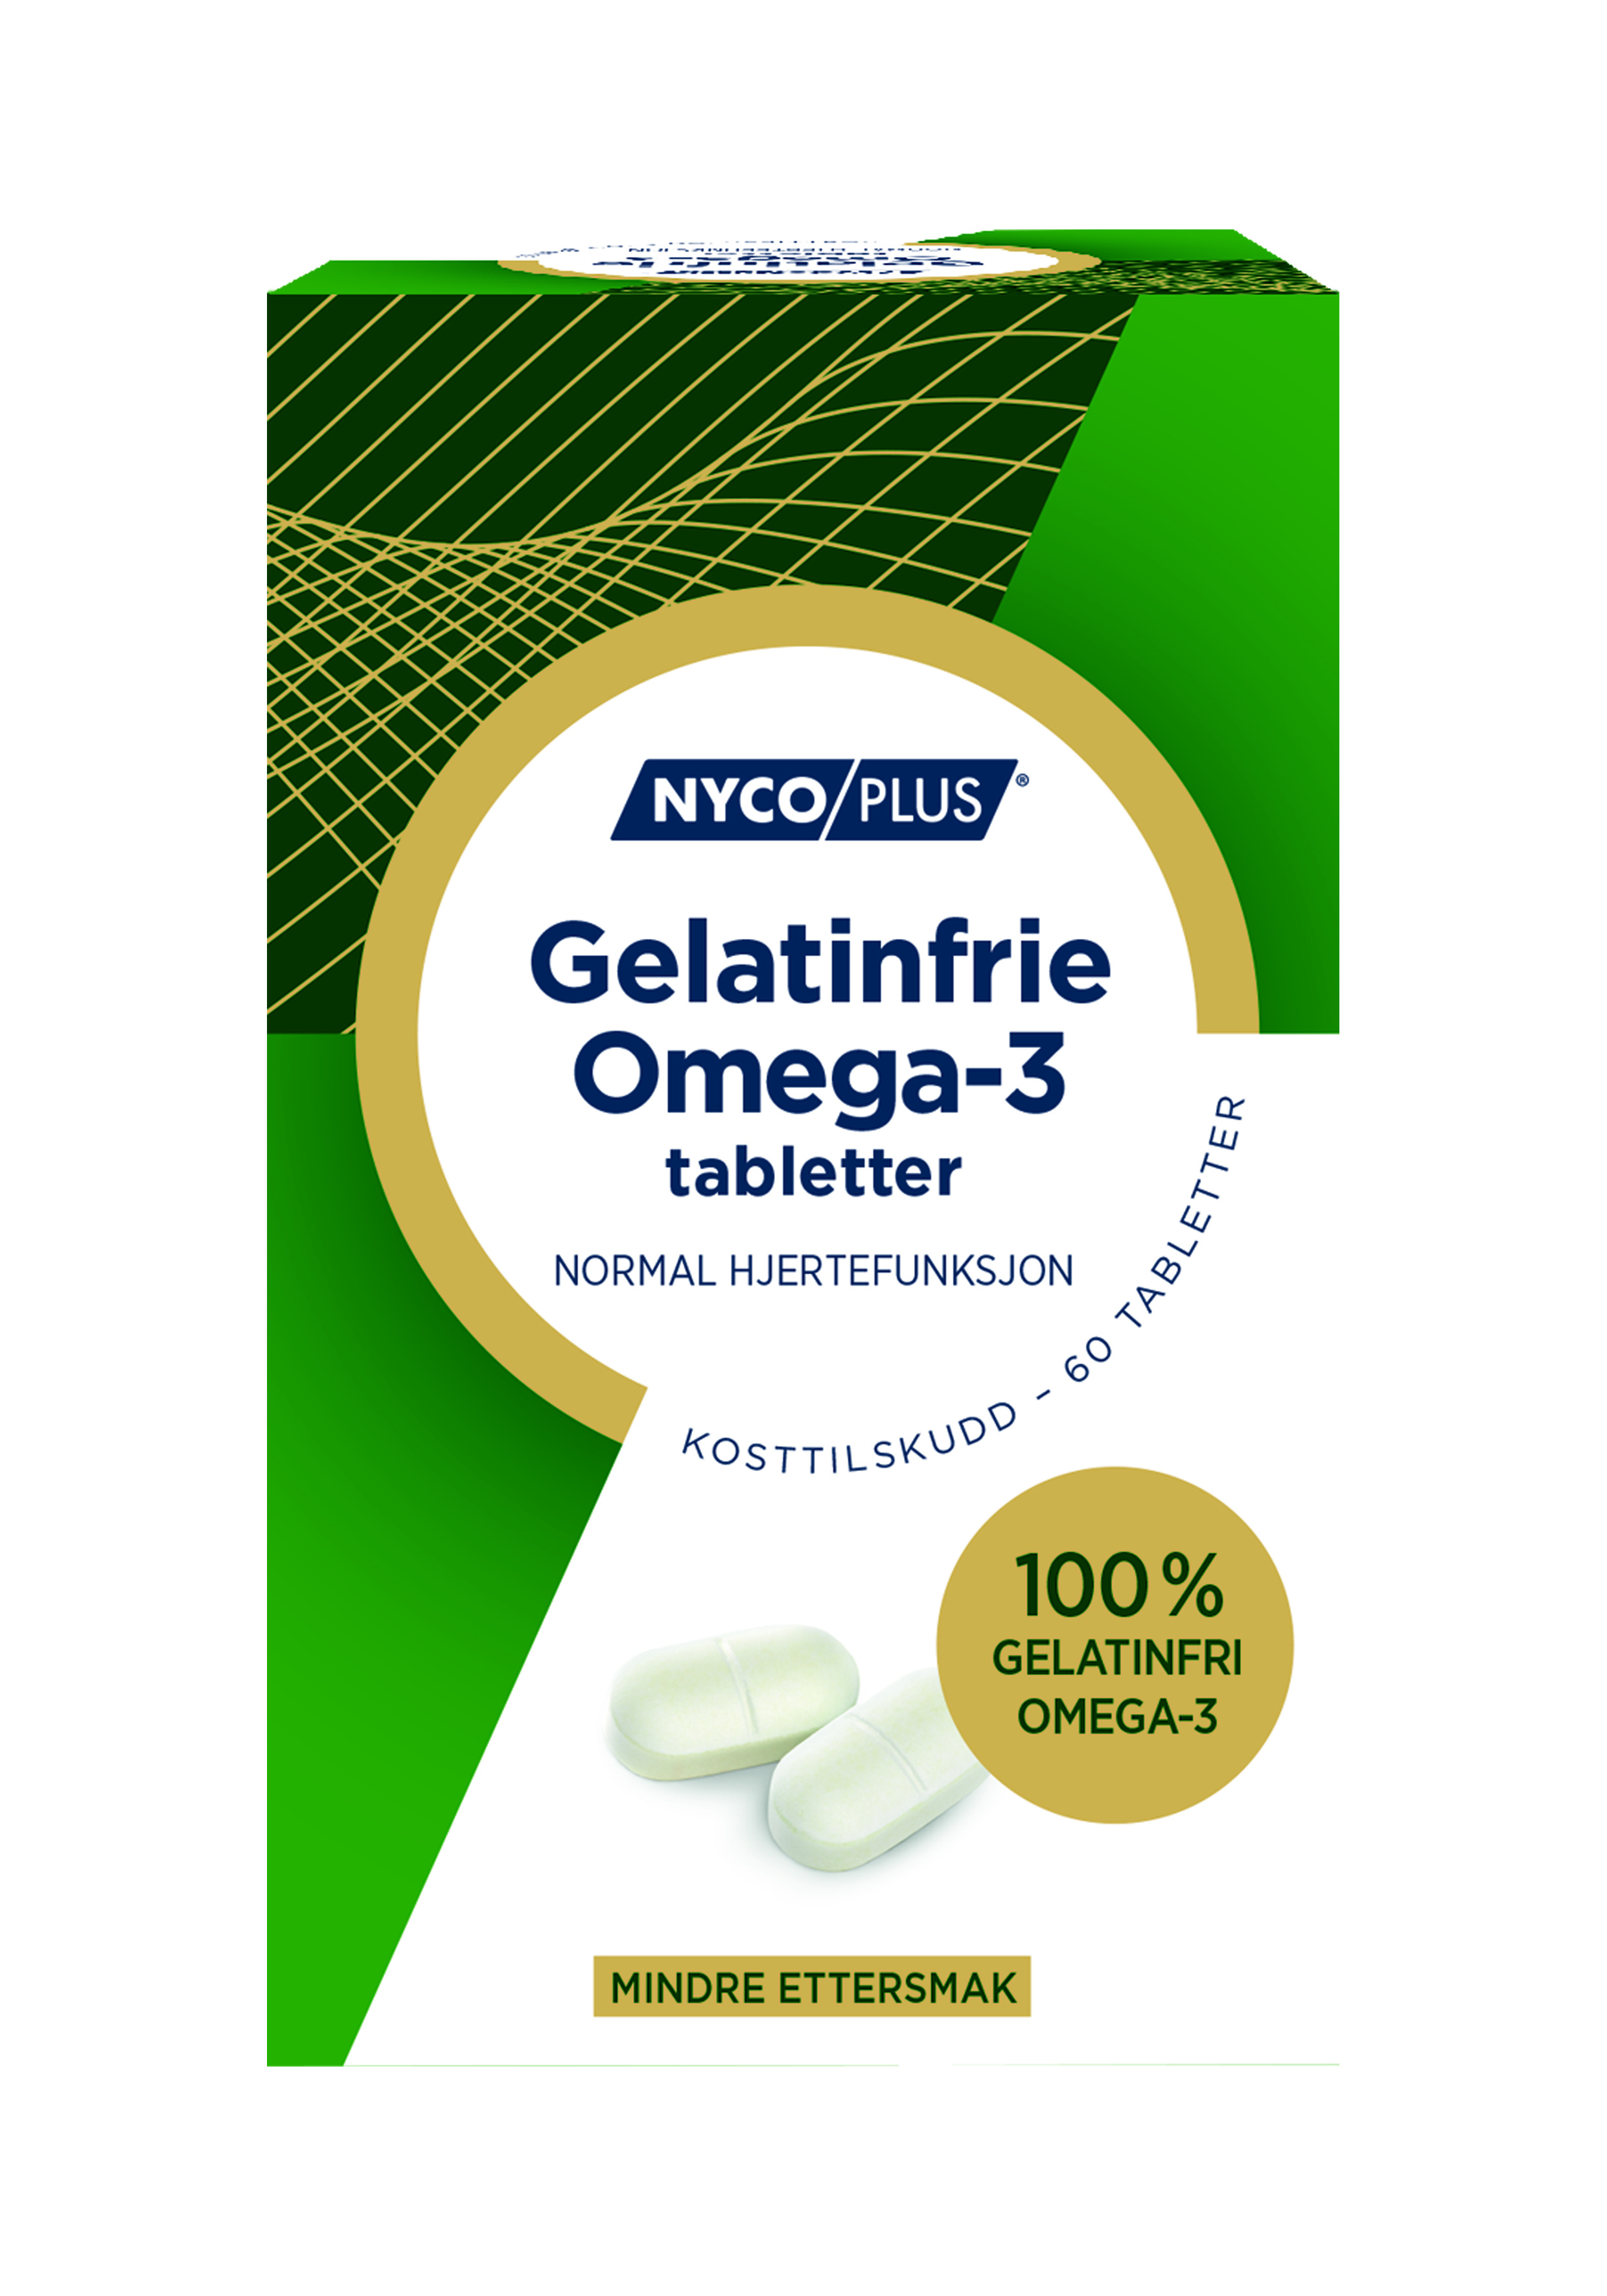 Nycoplus Omega-3 Gelatinfrie tabletter, 60 stk.